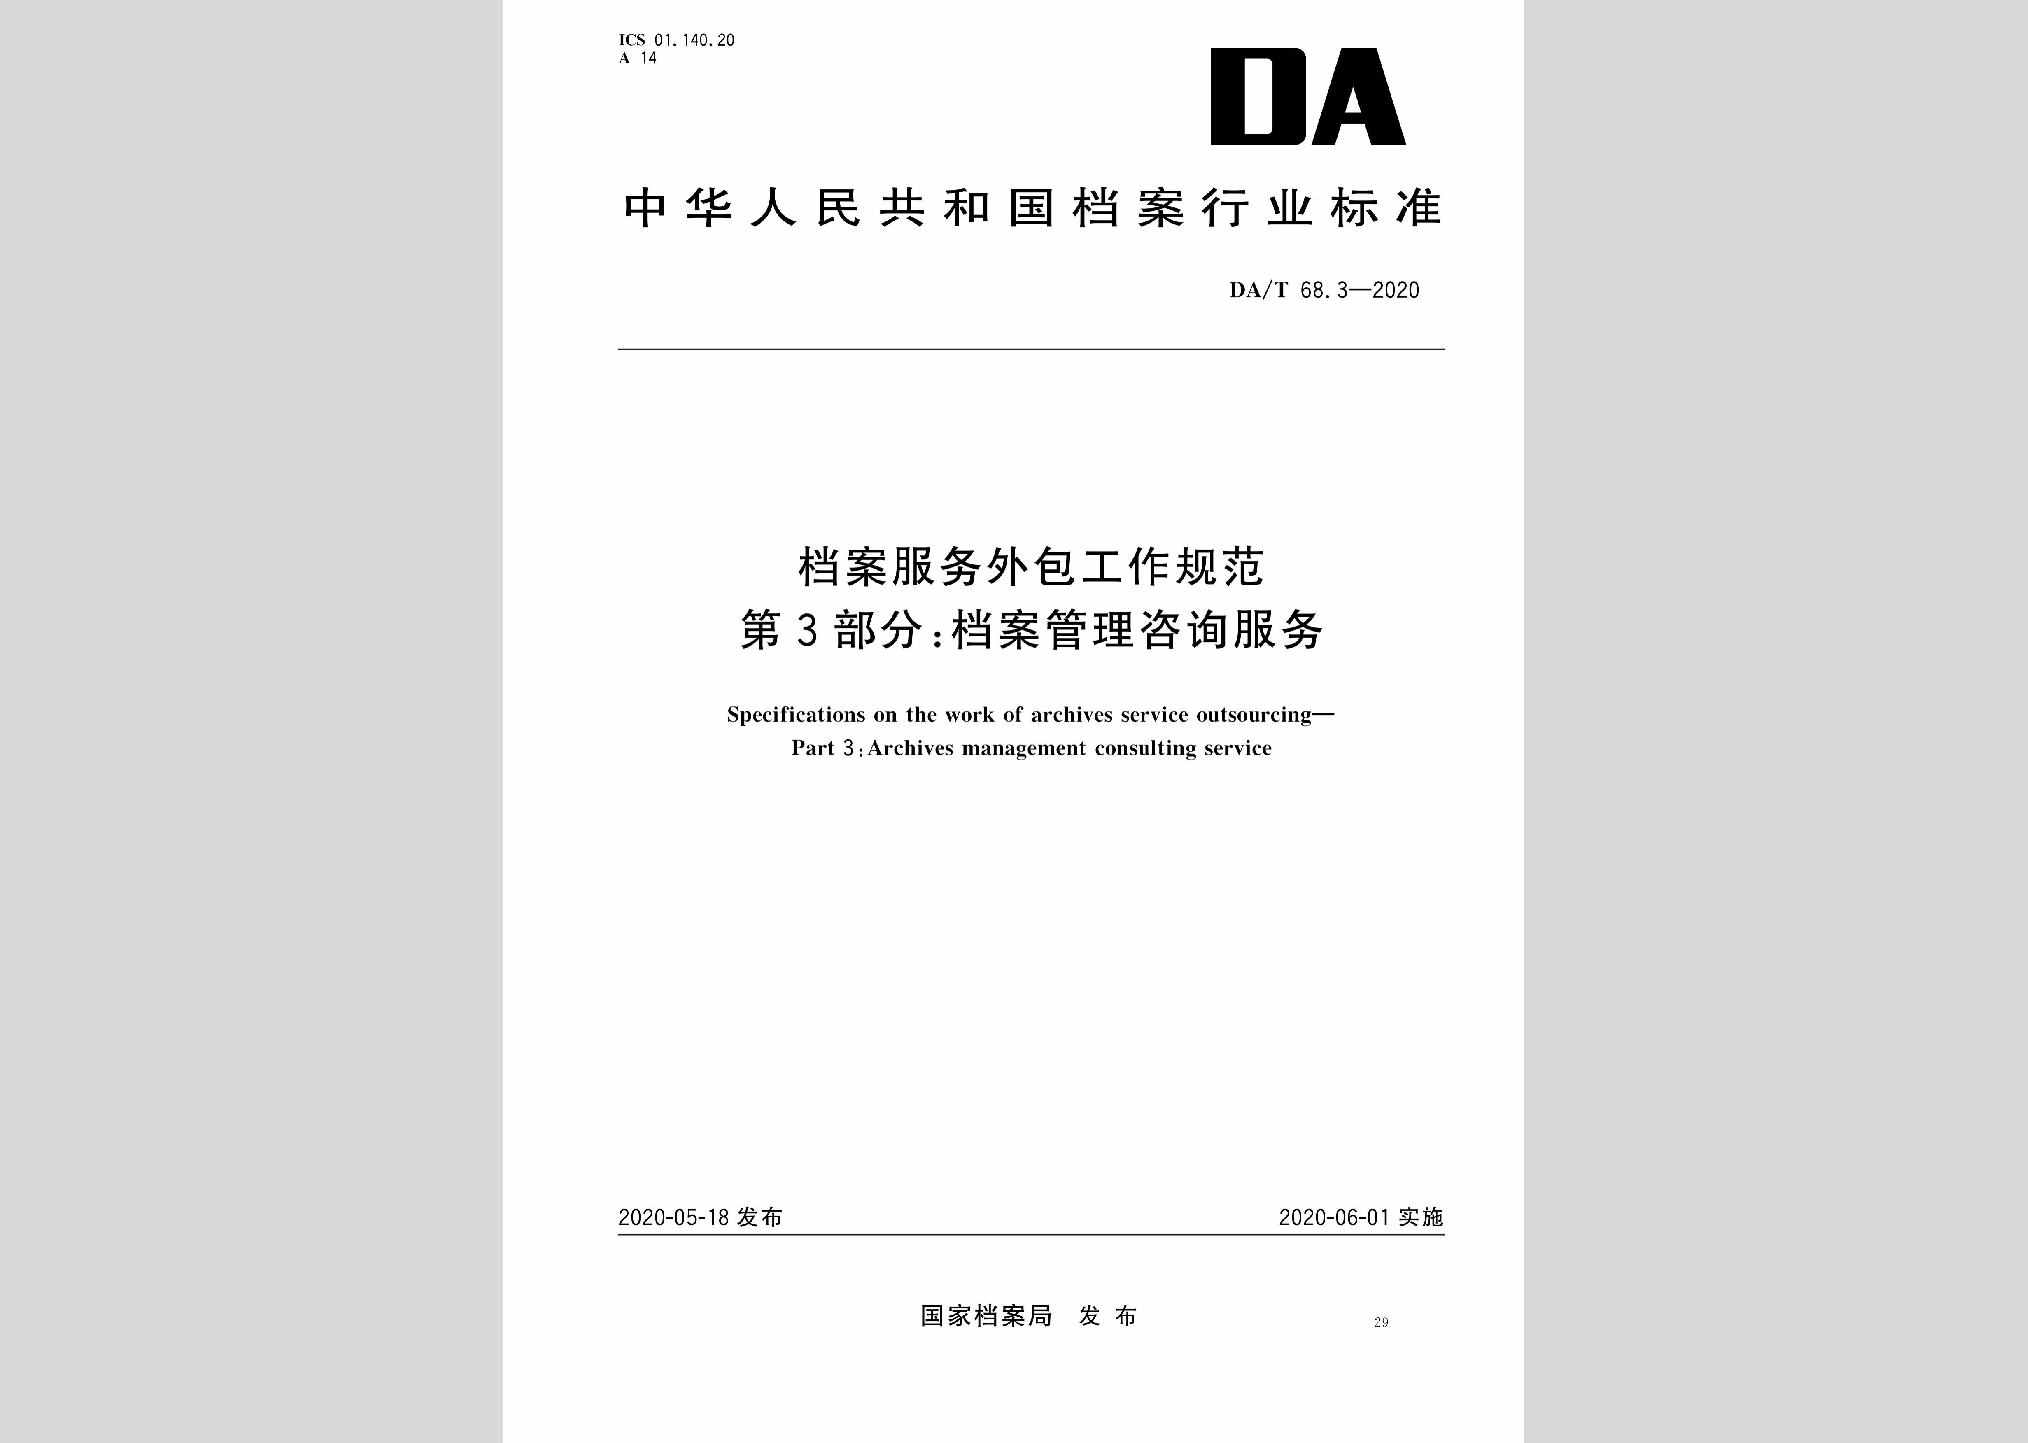 DA/T68.3-2020：档案服务外包工作规范第3部分:档案管理咨询服务